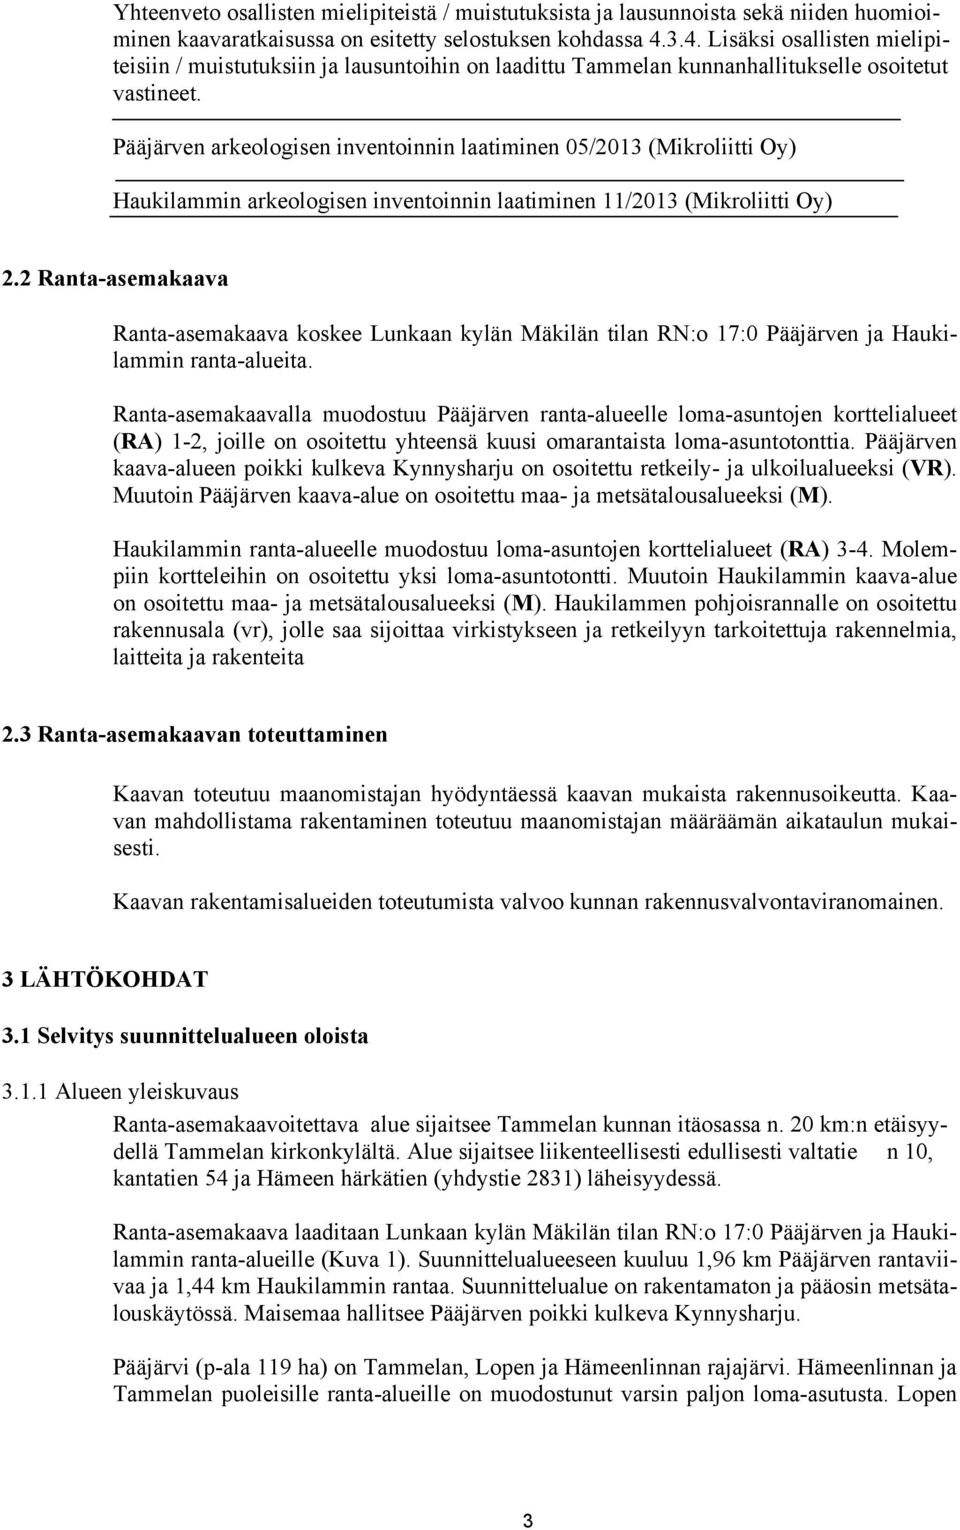 Pääjärven arkeologisen inventoinnin laatiminen 05/2013 (Mikroliitti Oy) Haukilammin arkeologisen inventoinnin laatiminen 11/2013 (Mikroliitti Oy) 2.